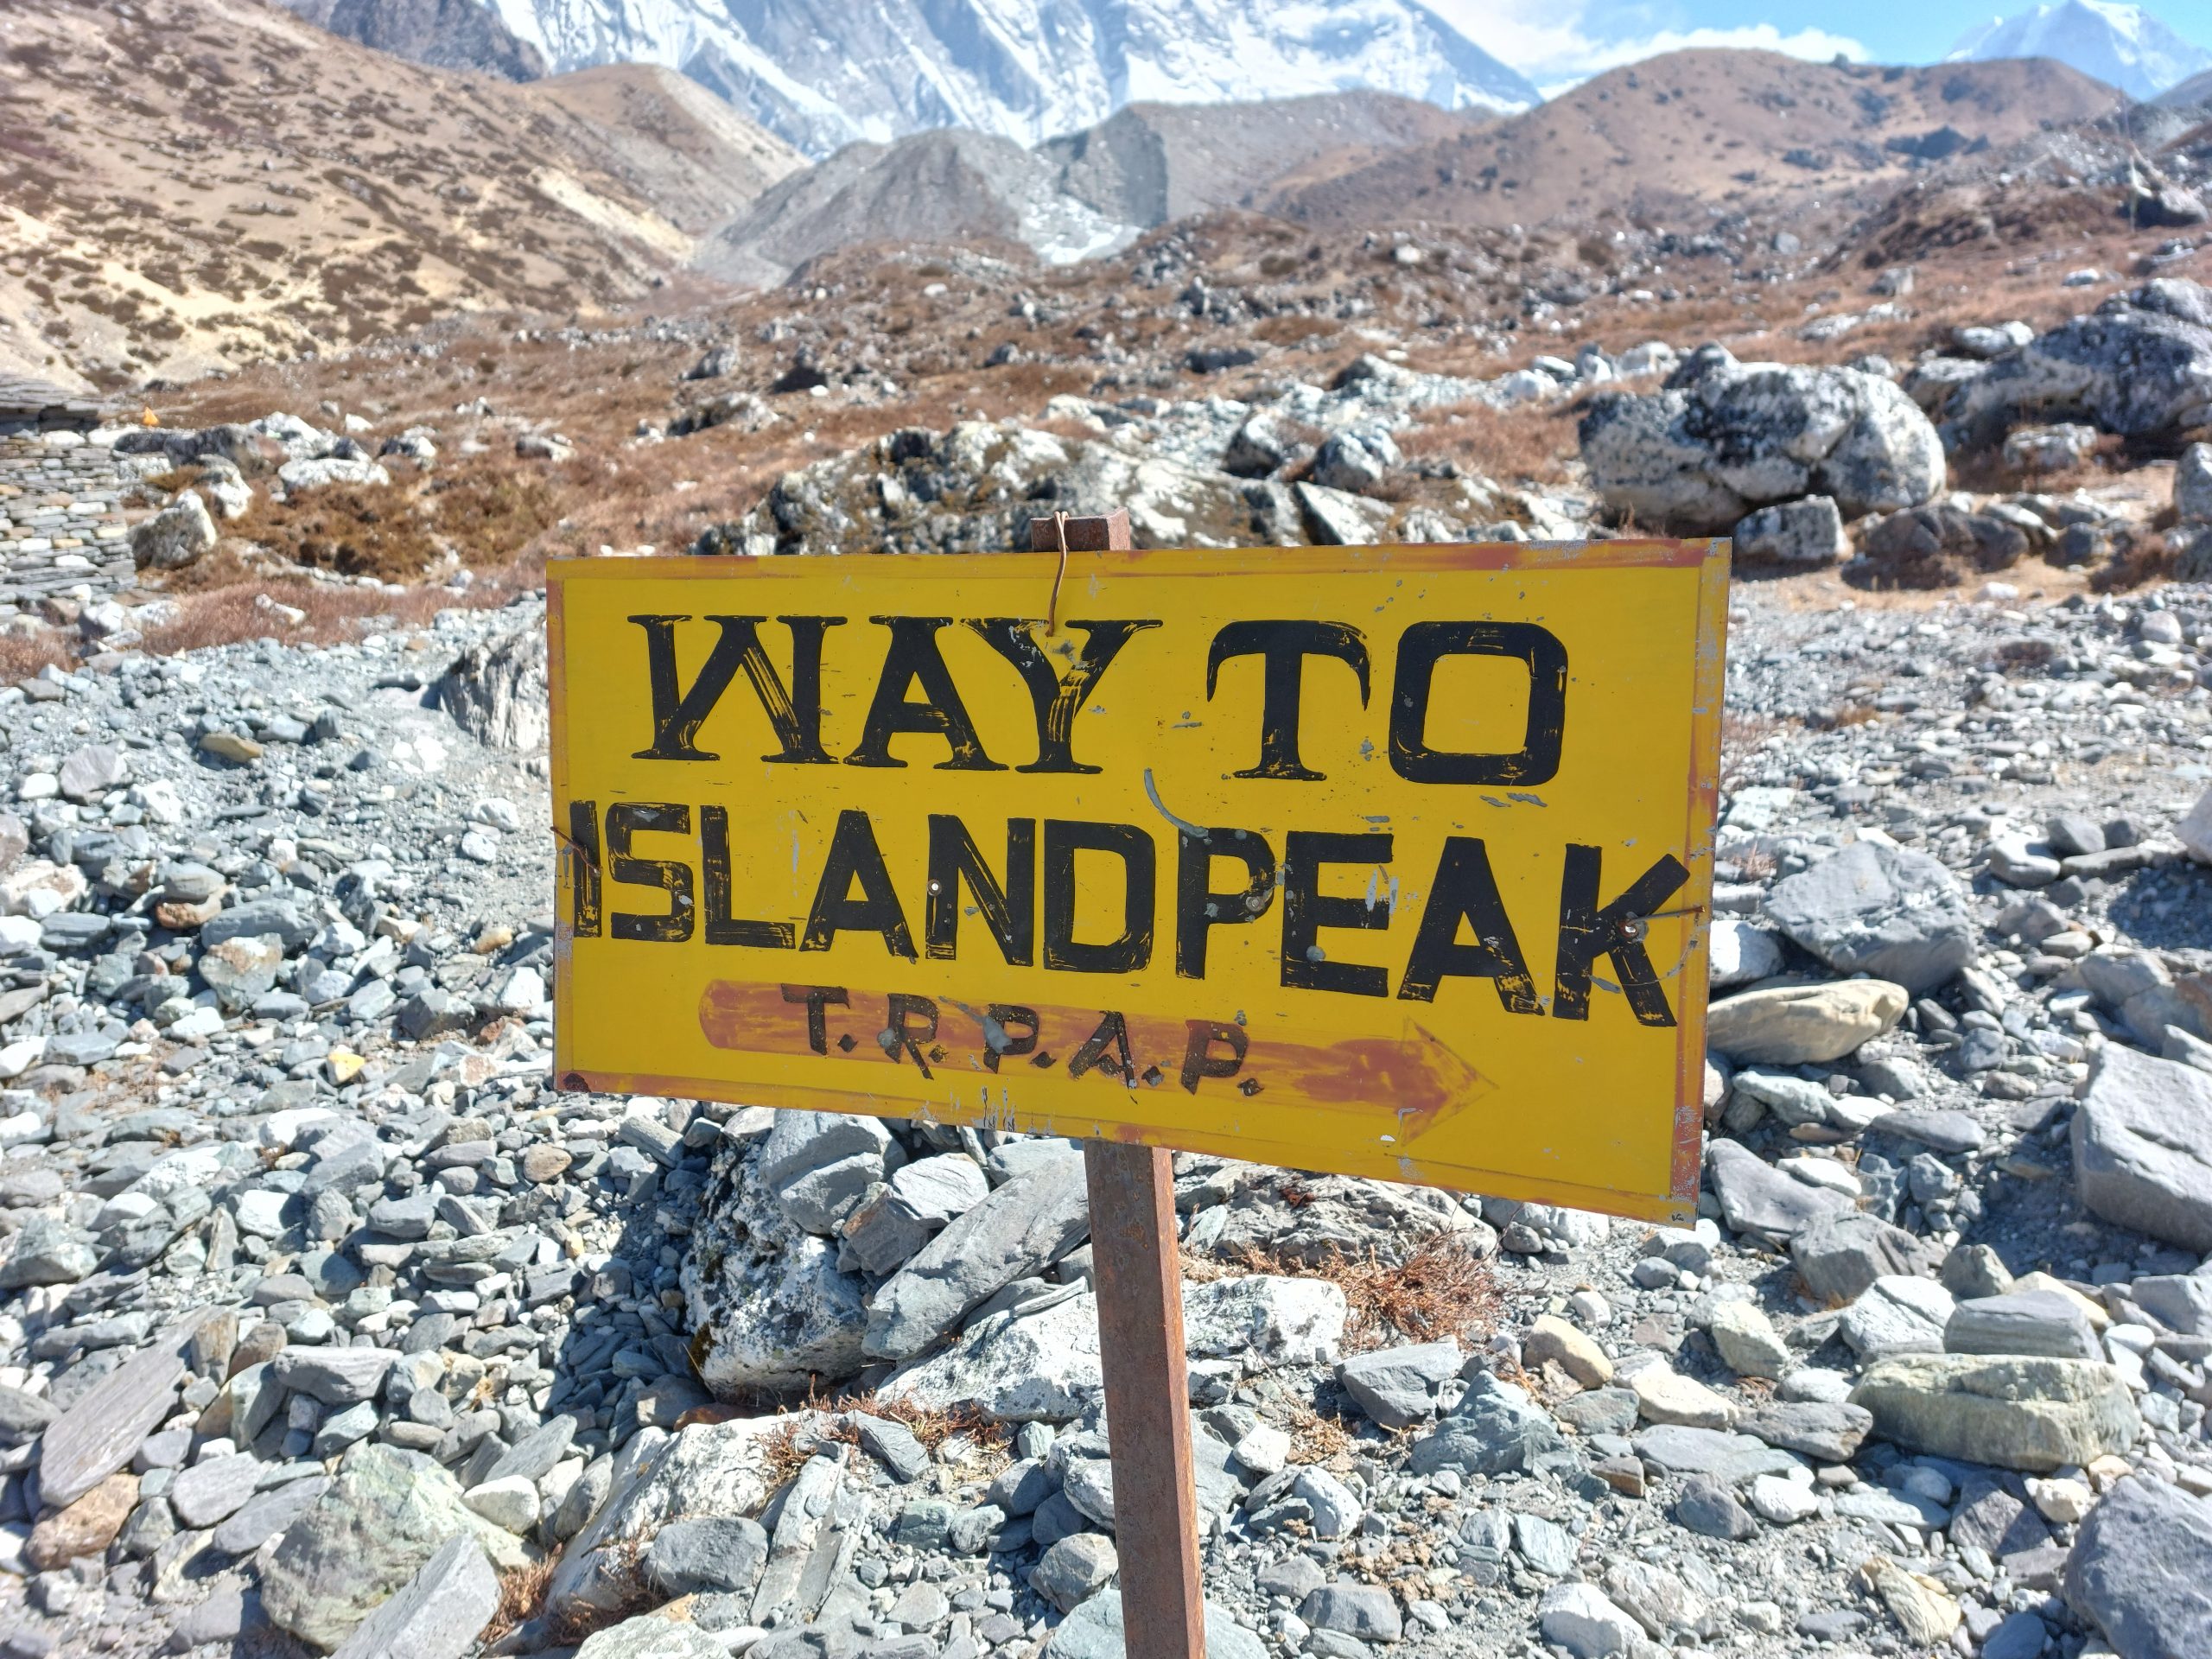 island-peak-climb